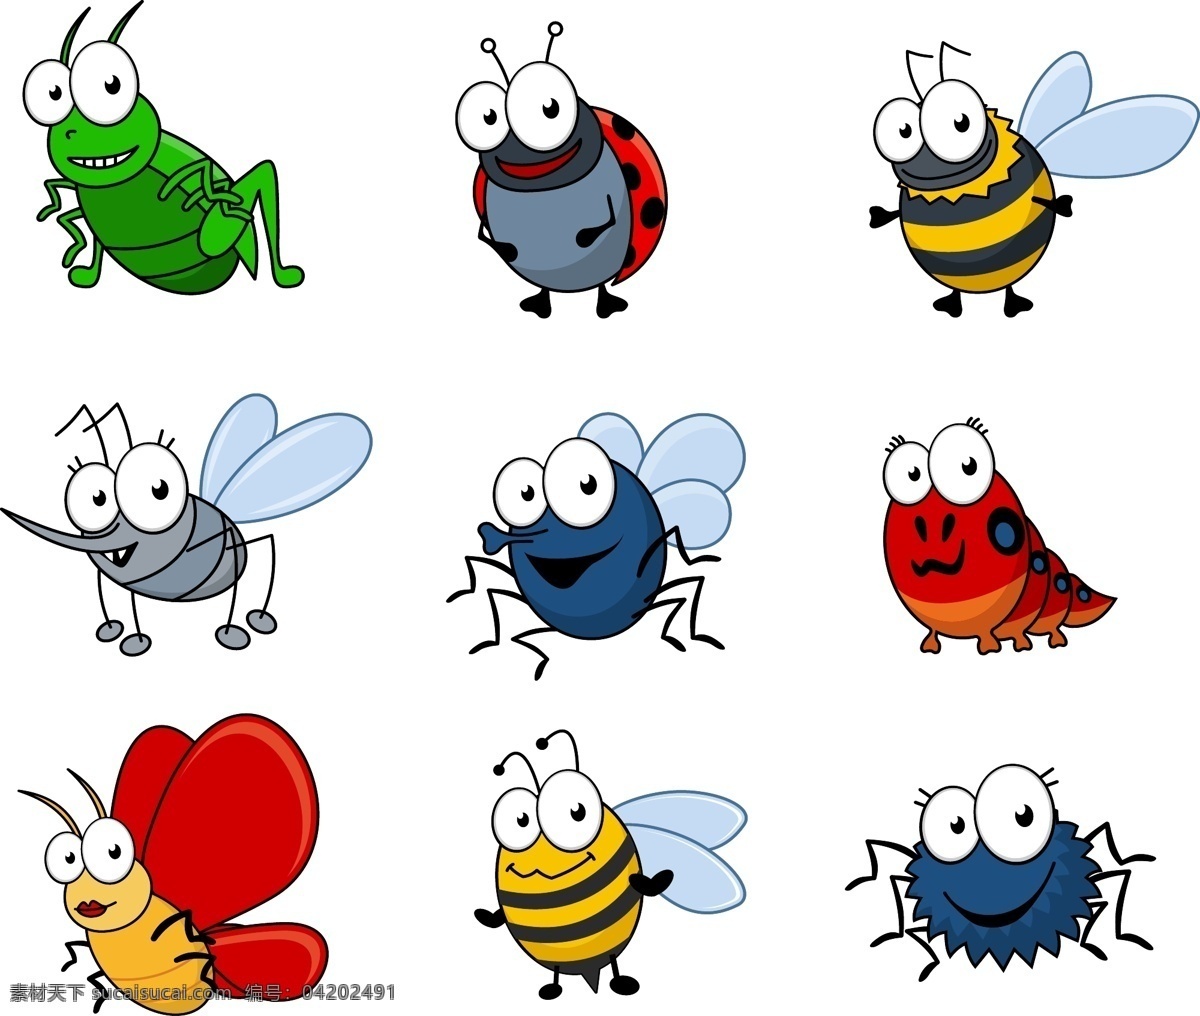 卡通 昆虫 采集 矢量 材料 苍蝇 动物 蝴蝶 集合 精致 可爱 漫画 蜜蜂 毛毛虫 蚱蜢 瓢虫 蚊子 蜘蛛 矢量素材 向量 矢量图 矢量人物